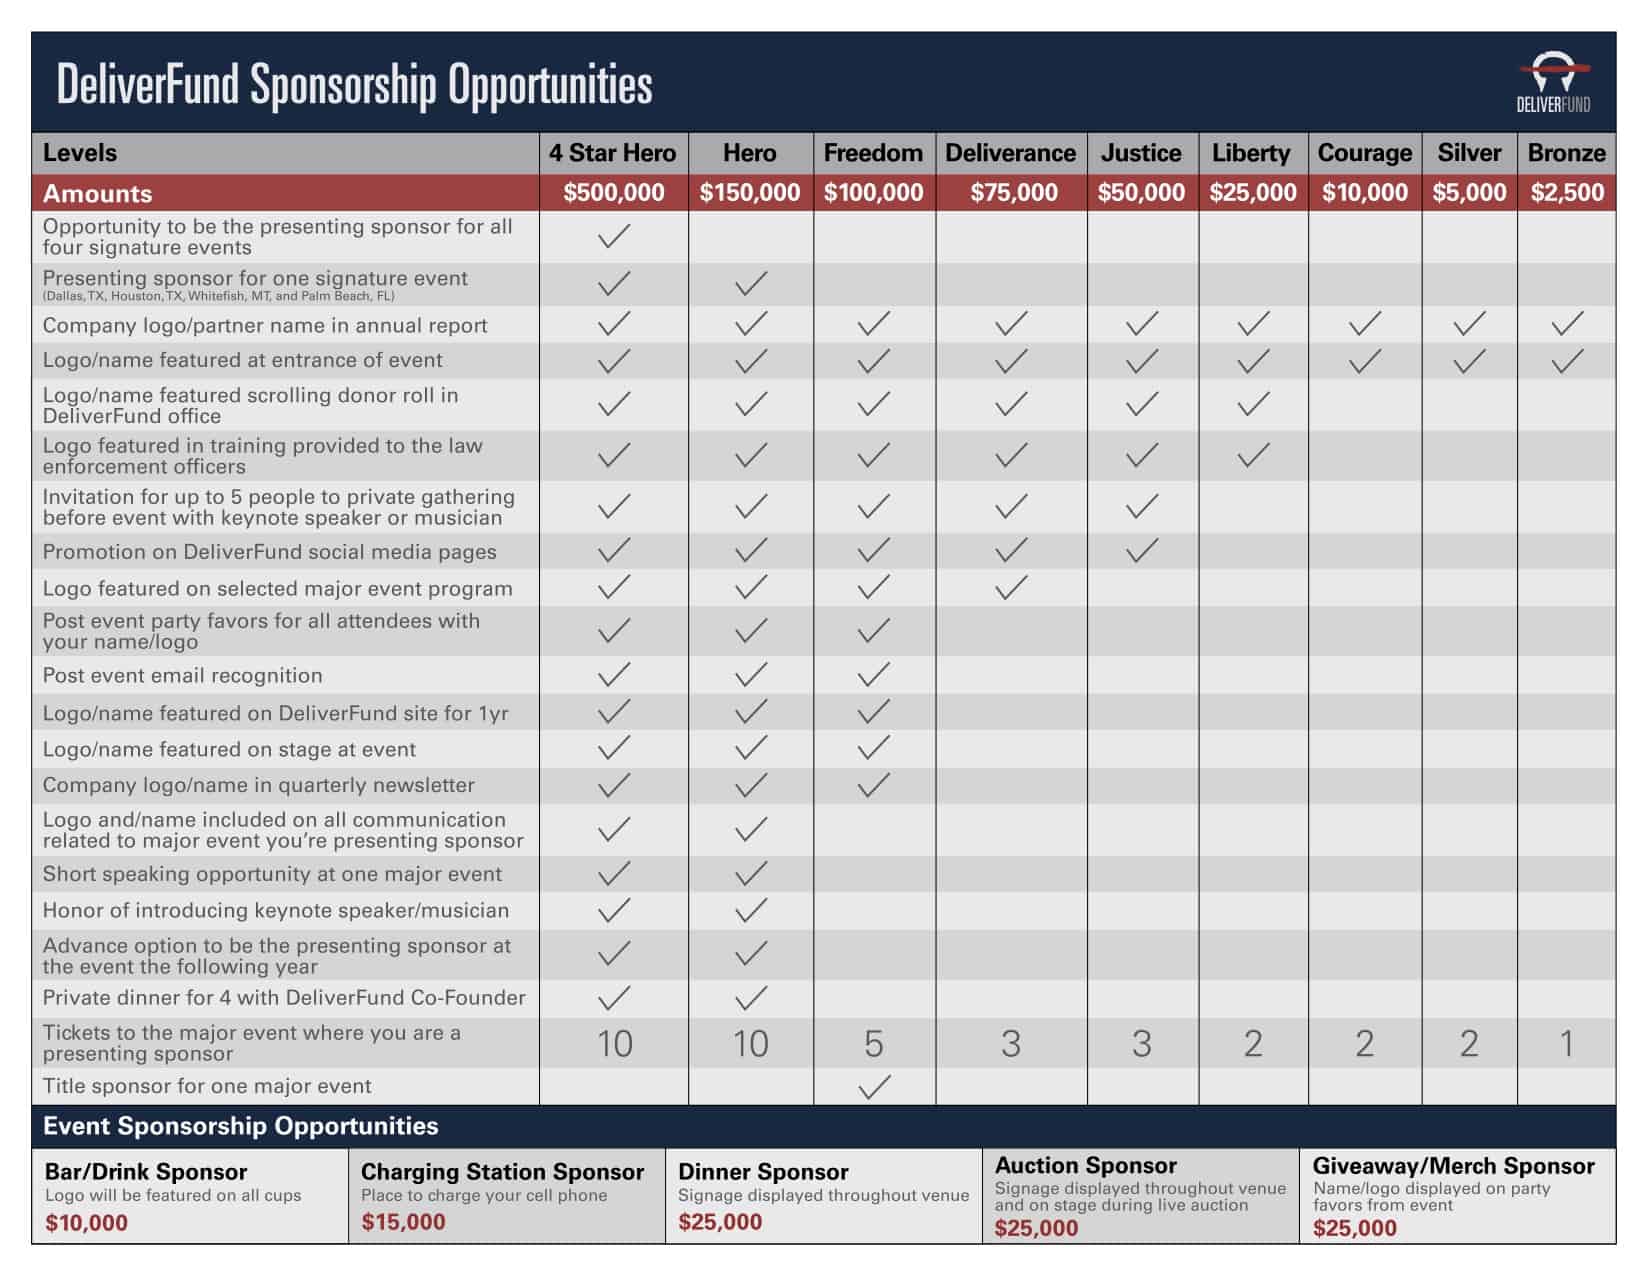 Sponsorship Levels table